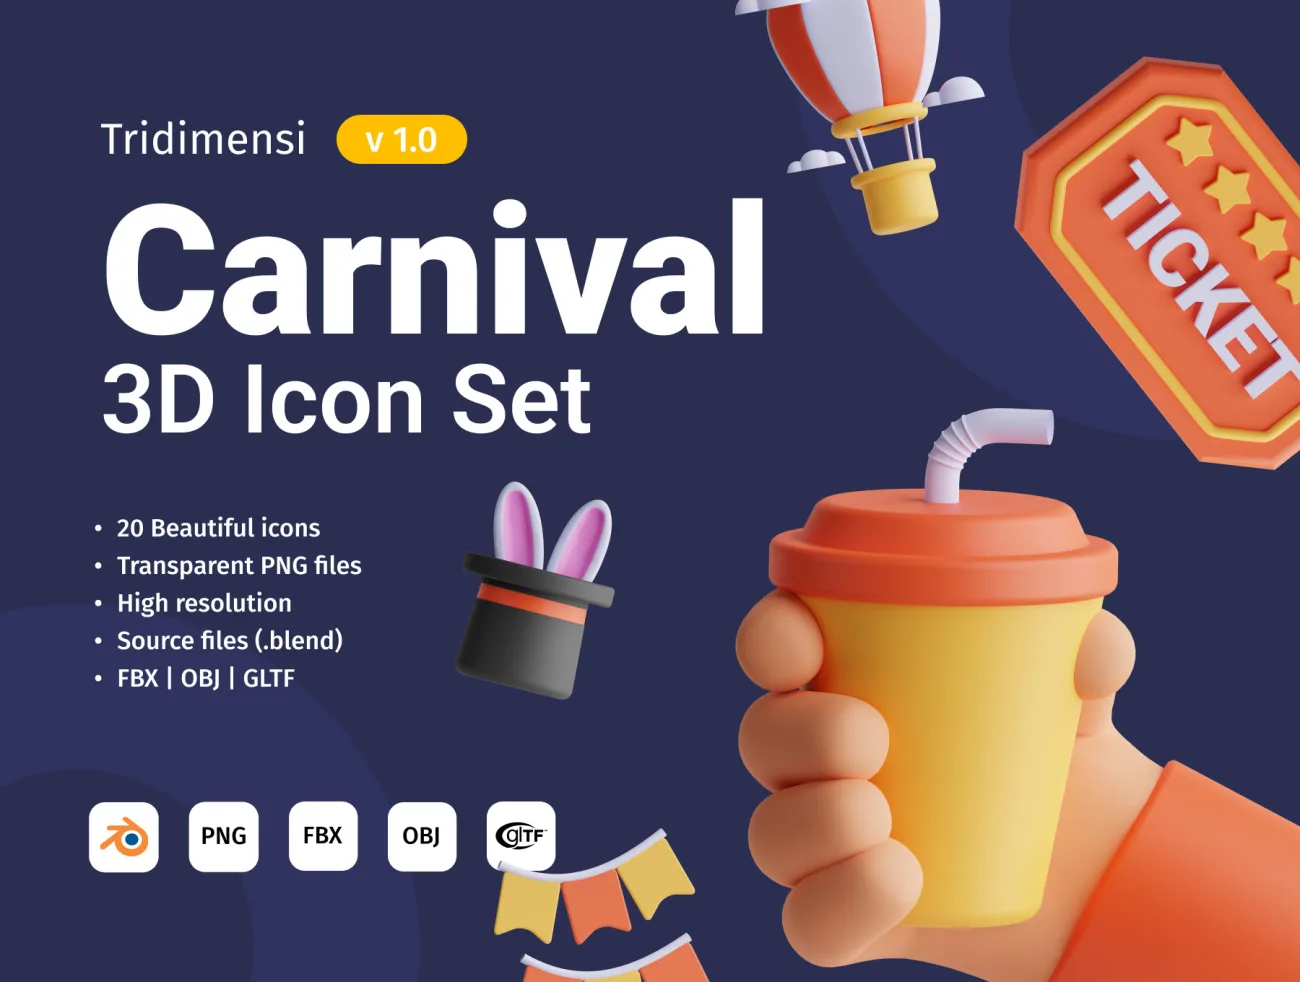 狂欢嘉年华3D模型图标集20款 Carnival 3D Icon Set .blender .fbx .obj .gltf-3D/图标-到位啦UI